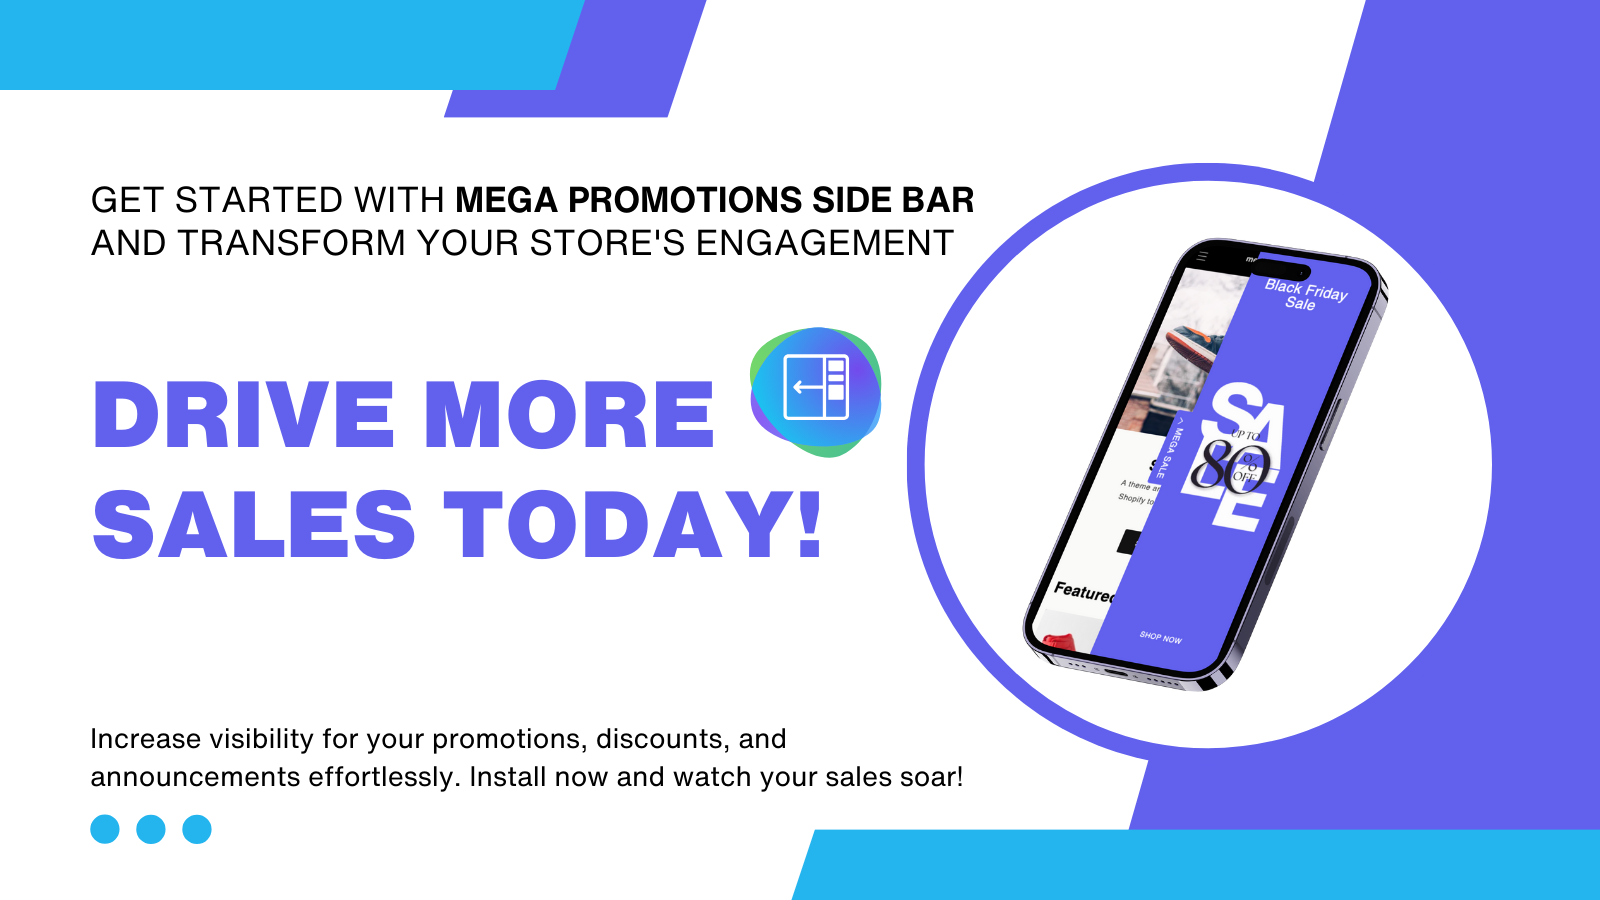 Mega Promotions Side Bar - Öka försäljningen i din butik